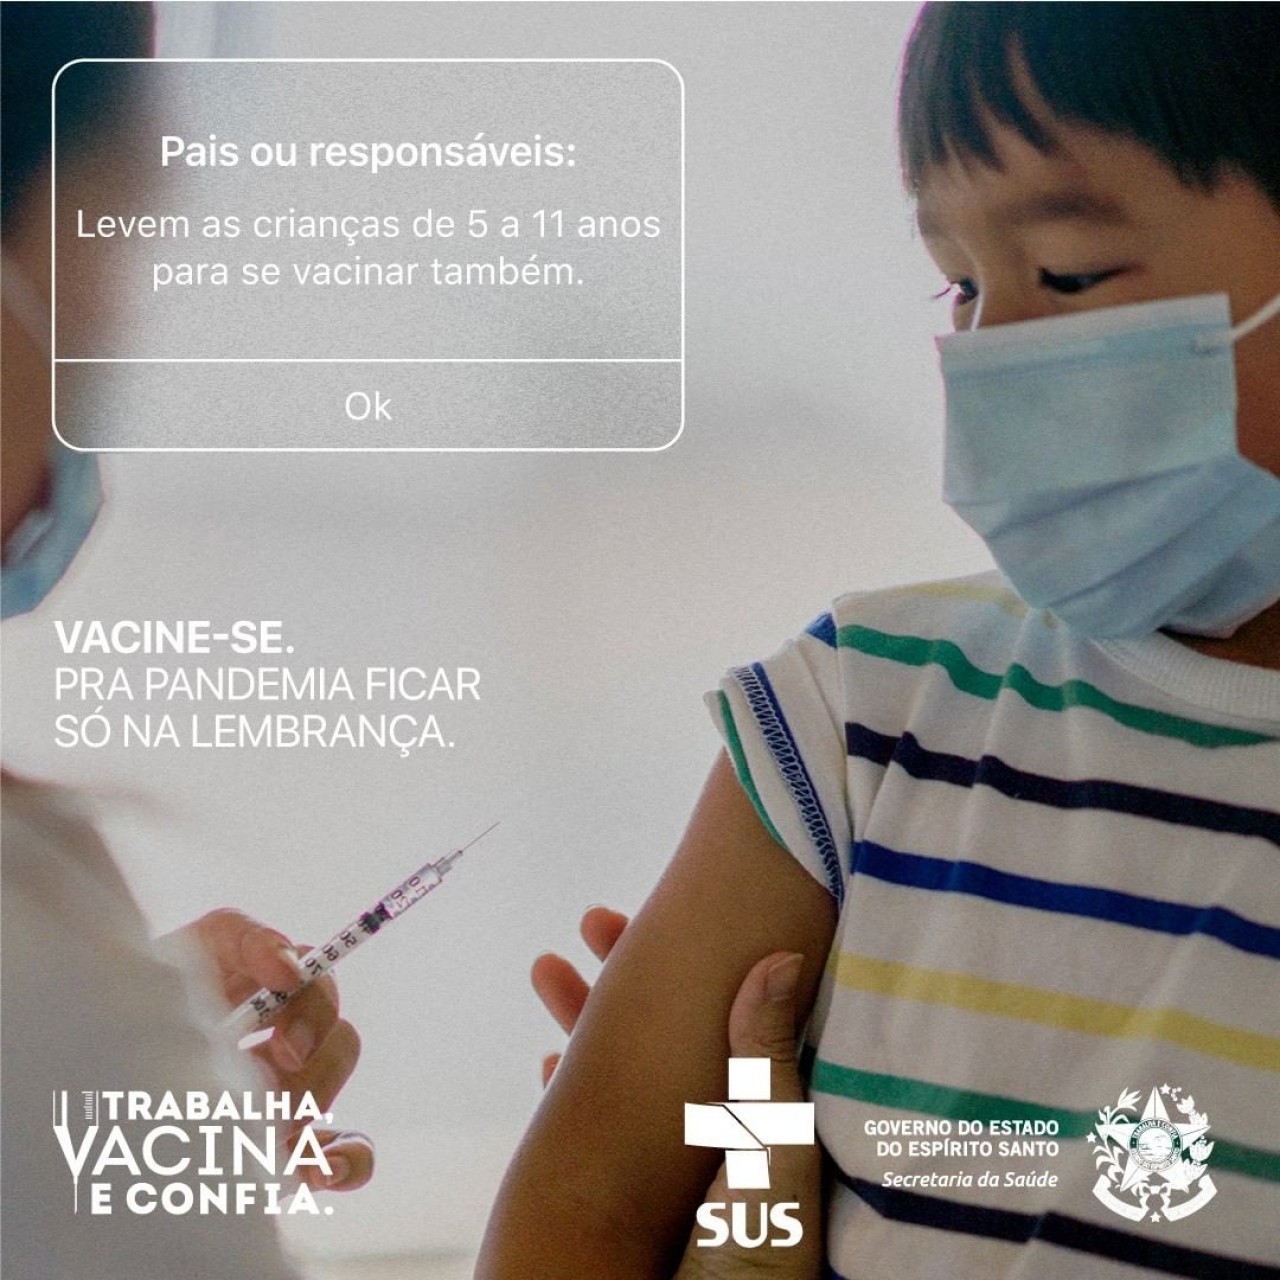 Vacinação das crianças!